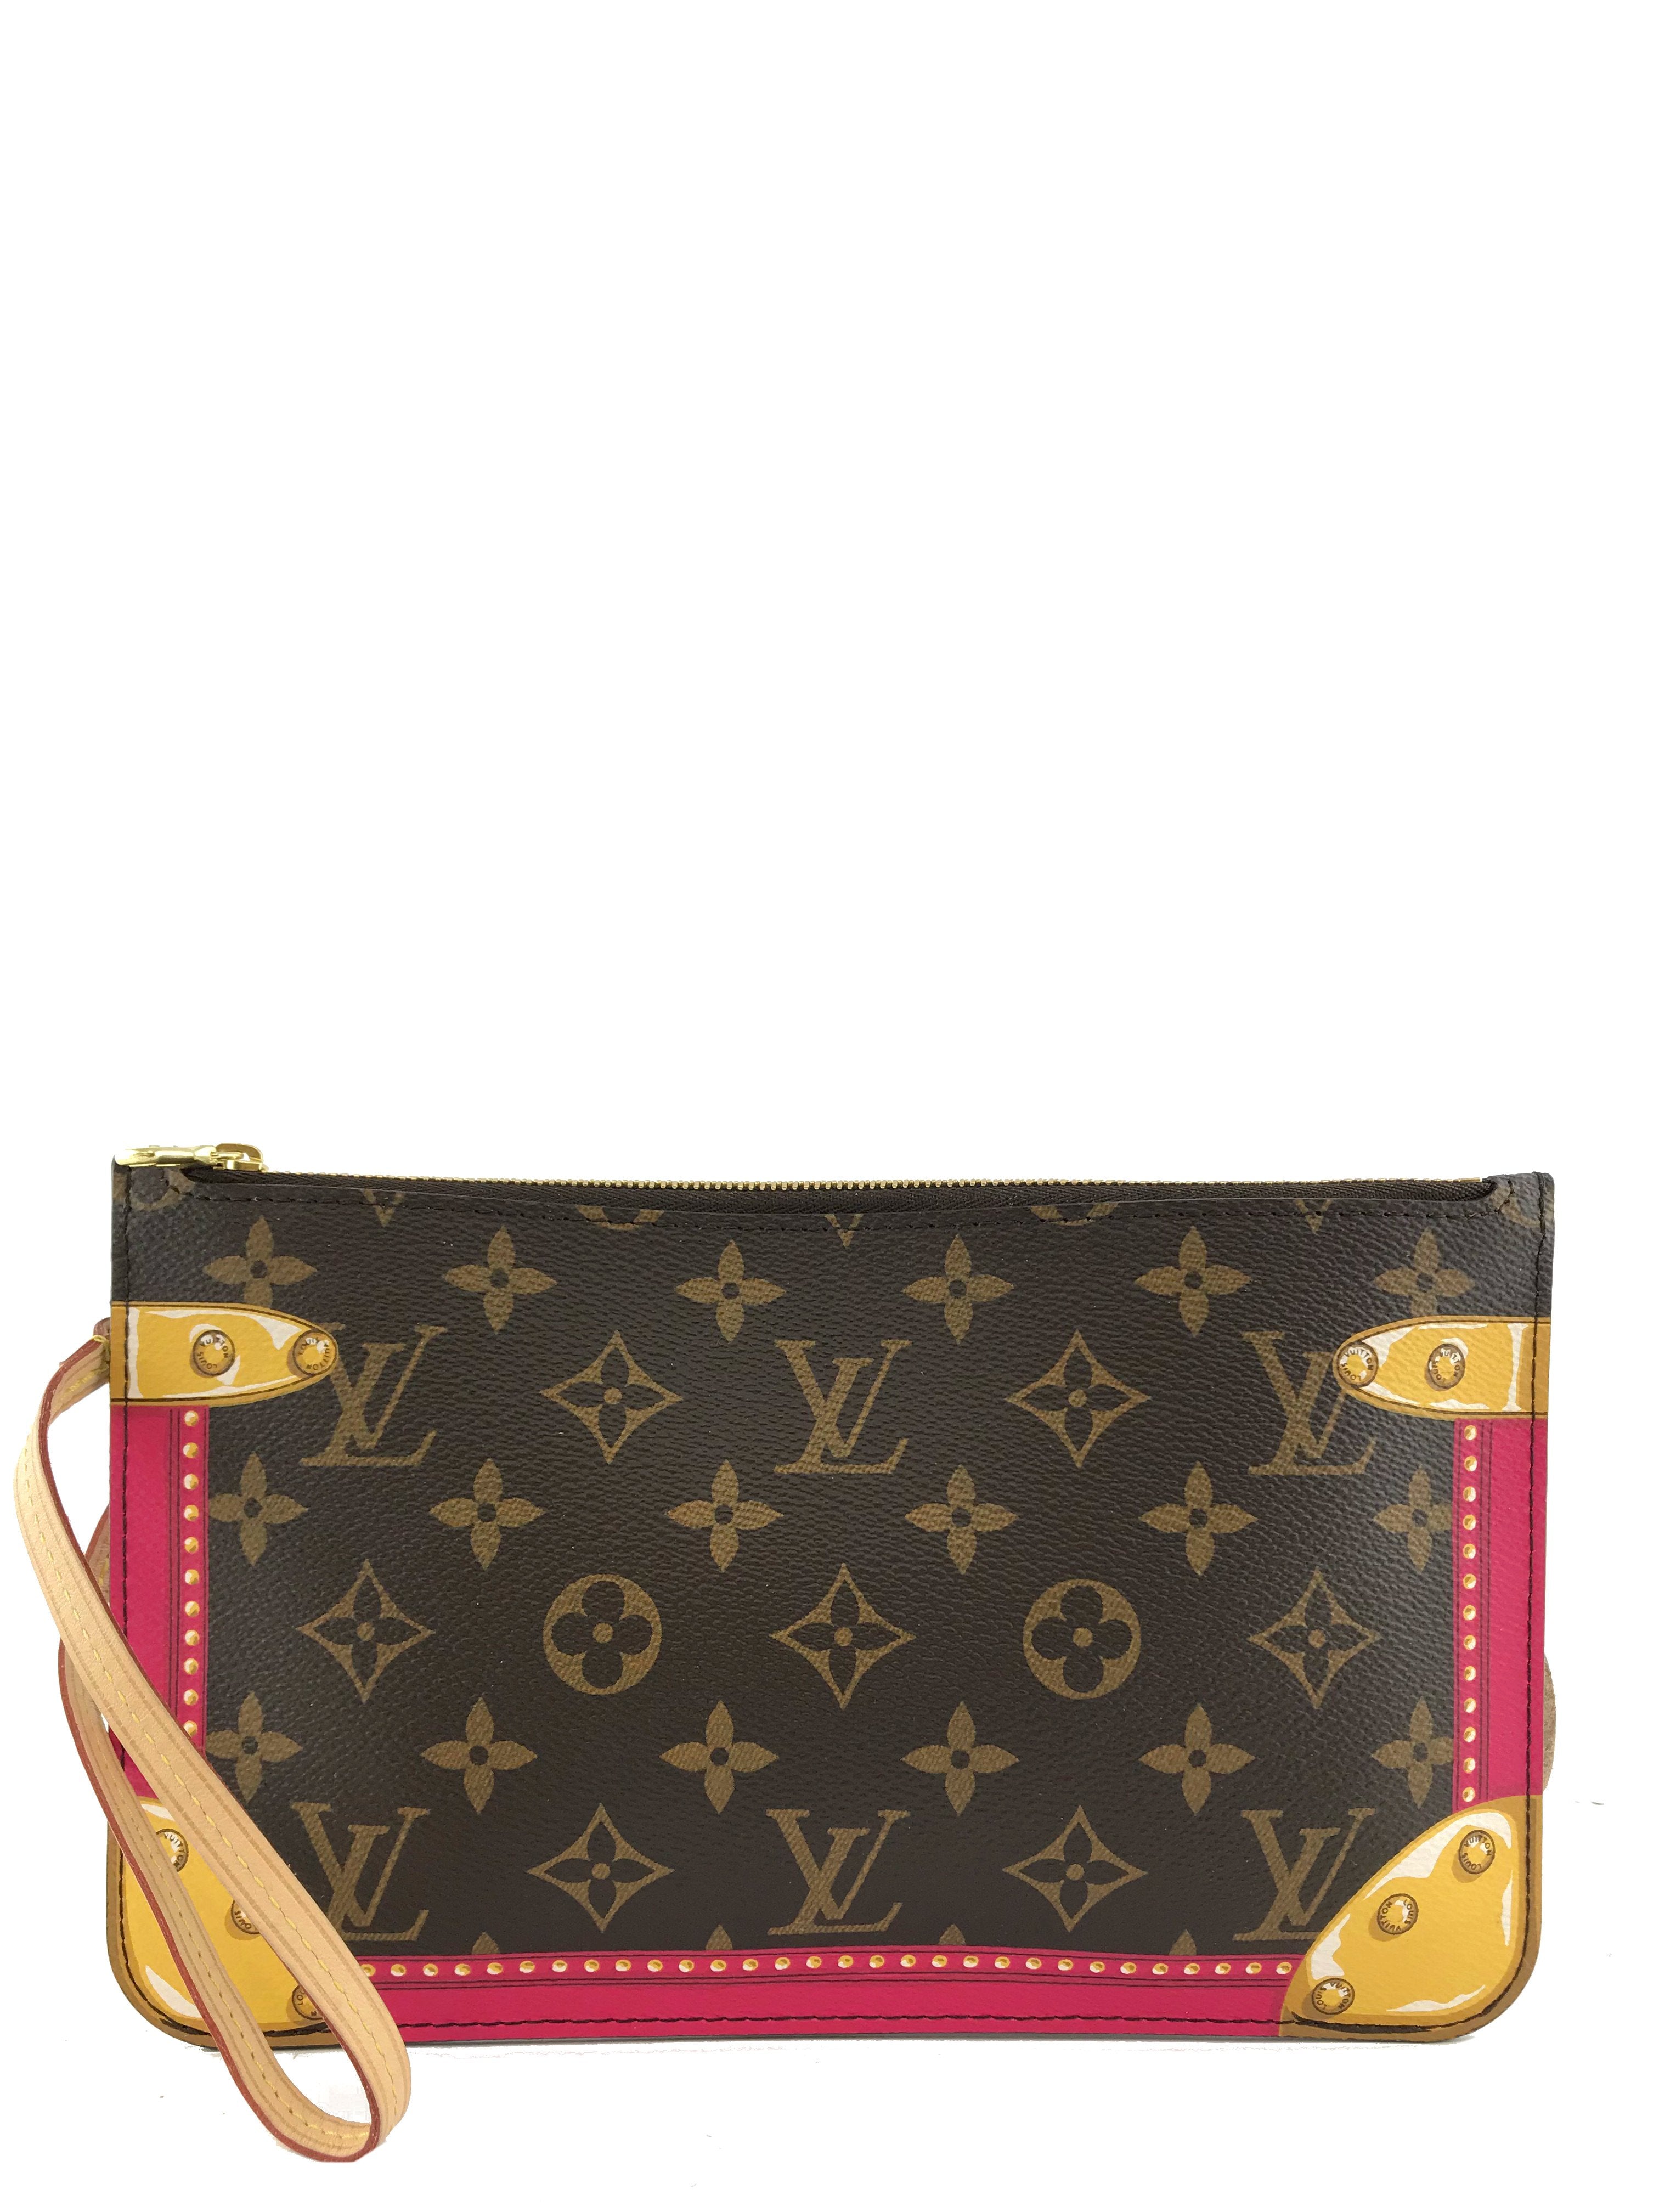 NEW! Louis Vuitton Neverfull MM Pouch Summer Trunks Wristlet Clutch Pochette